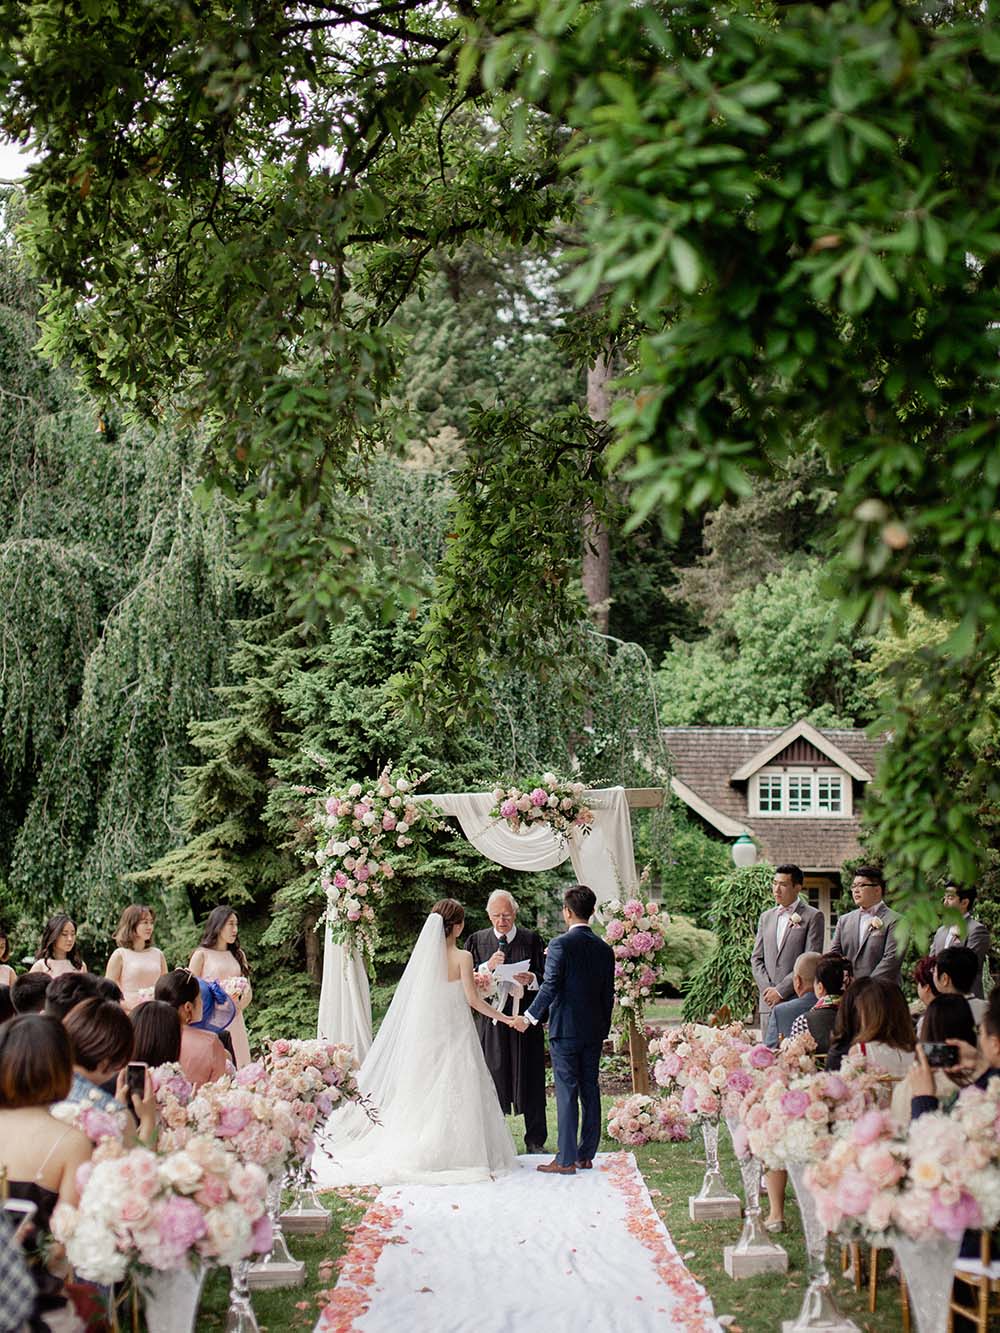 A Gorgeous Spring Garden Wedding In Vancouver Weddingbells